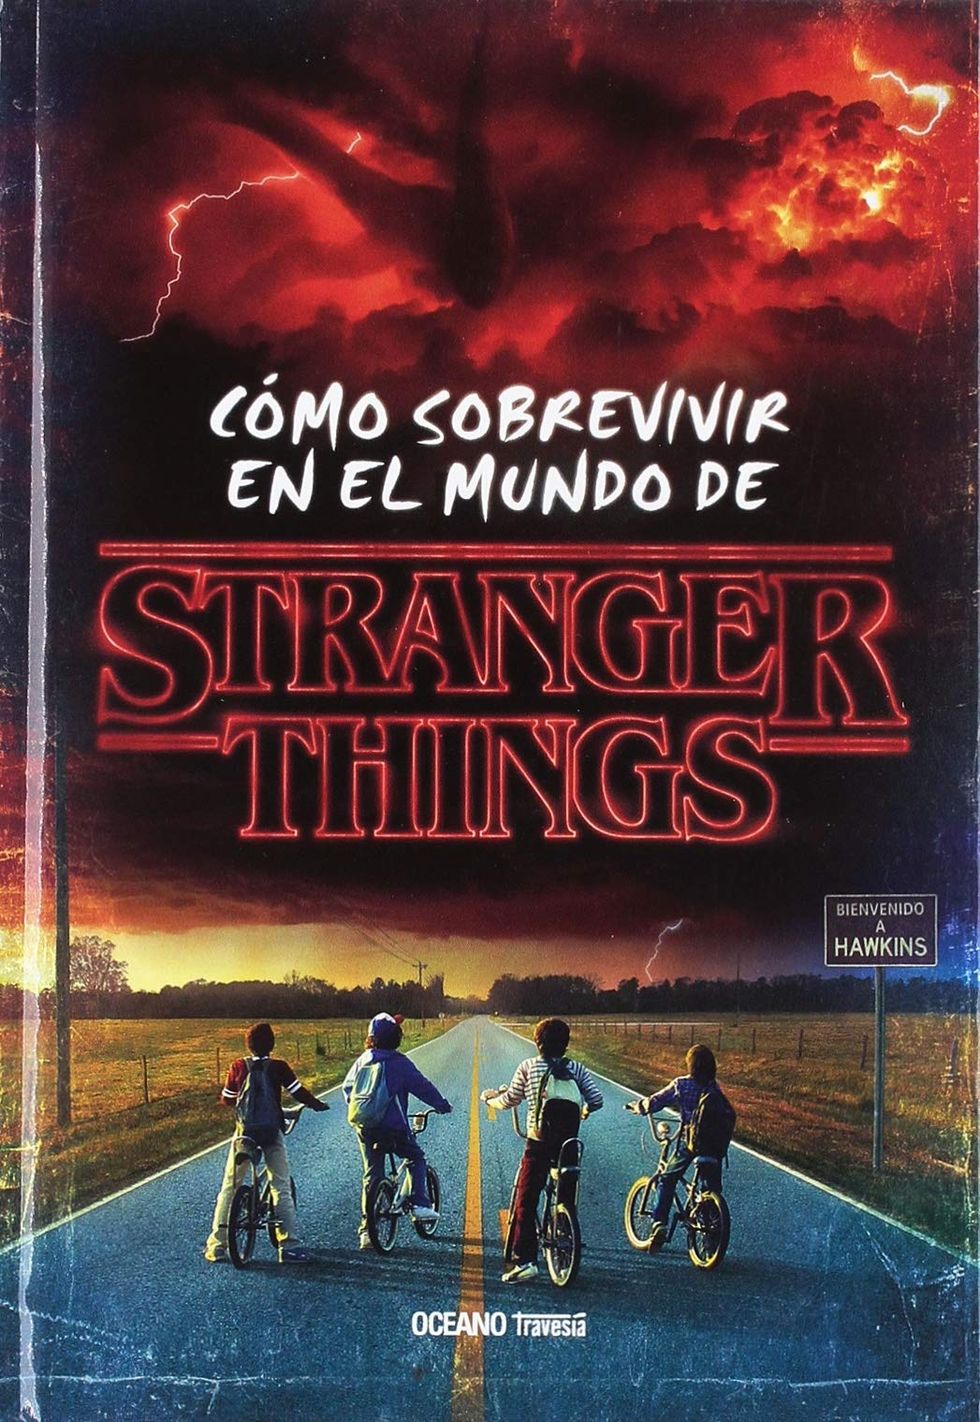 Stranger Things': los mejores libros de la serie de Netflix